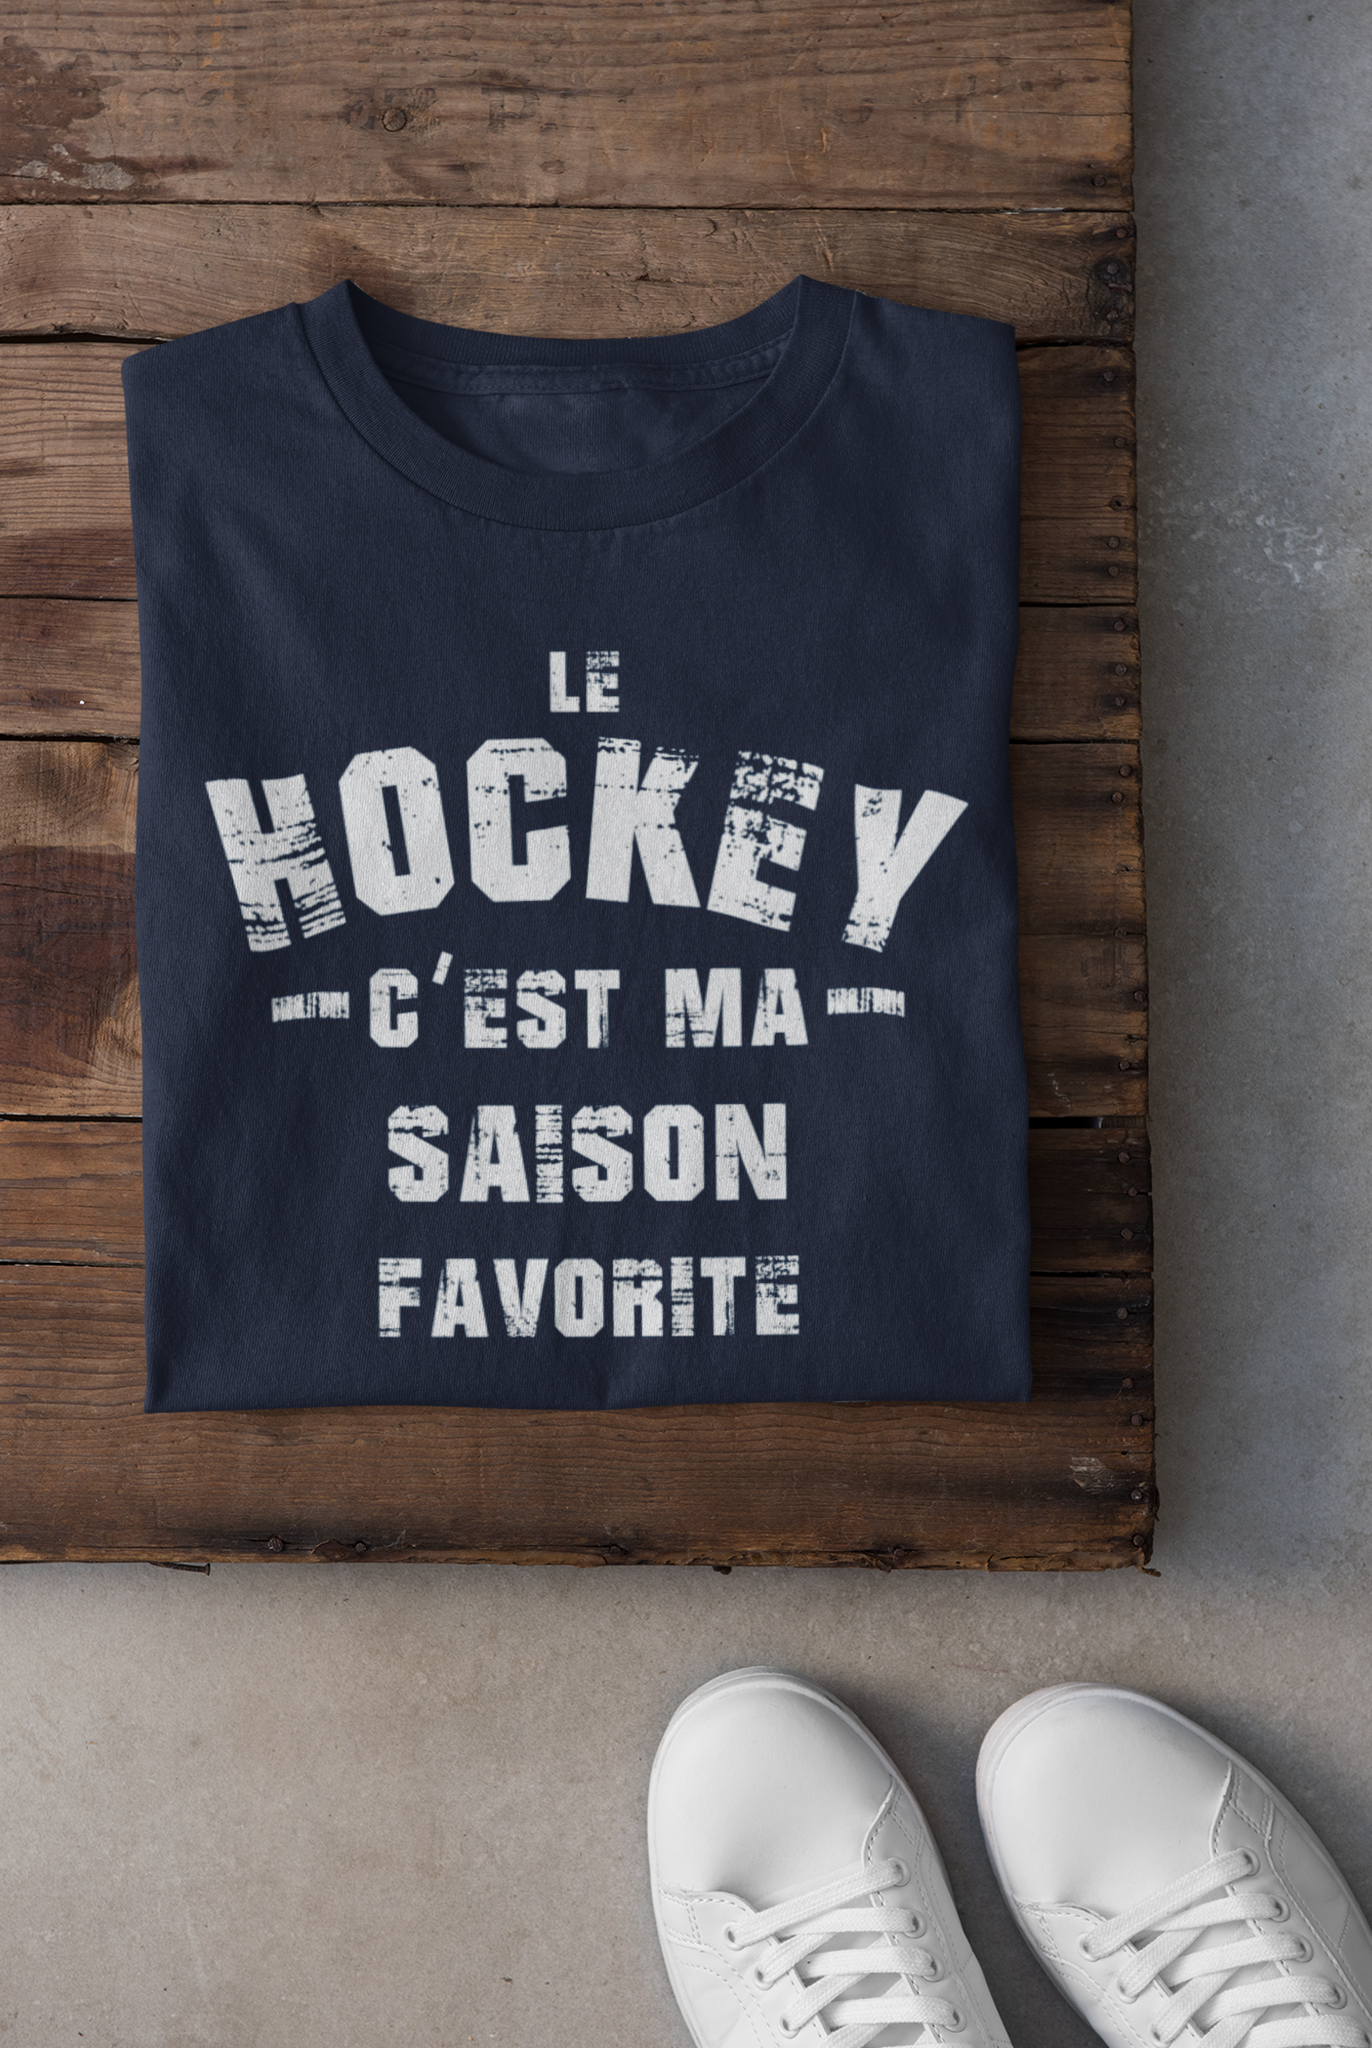 T-Shirt - Le hockey c’est ma SAISON favorite !